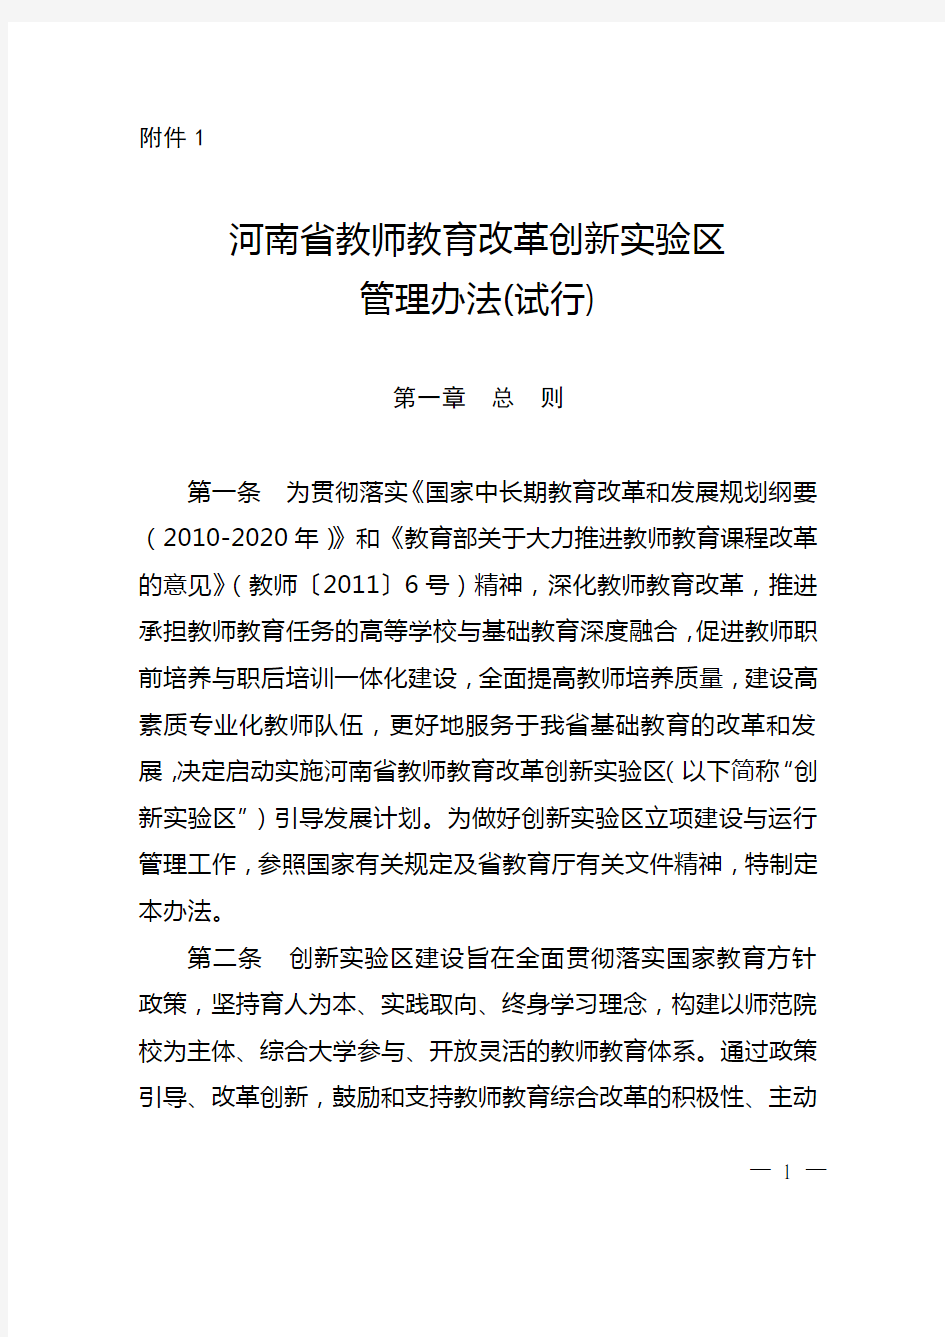 河南省教师教育改革创新实验区管理办法